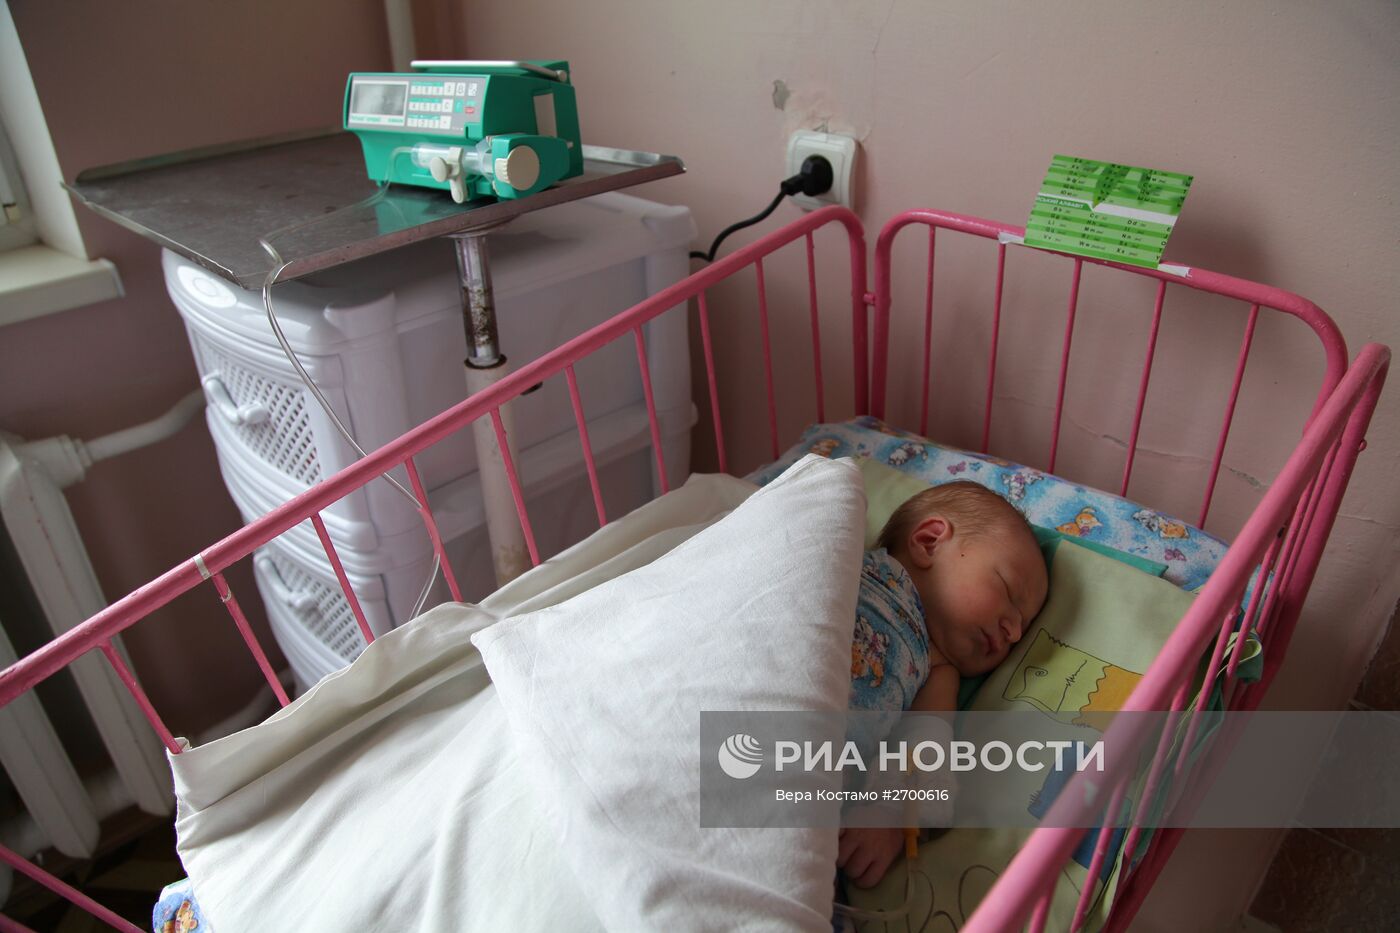 Территориальное медицинское объединение "Семья и здоровье" в Донецкой области